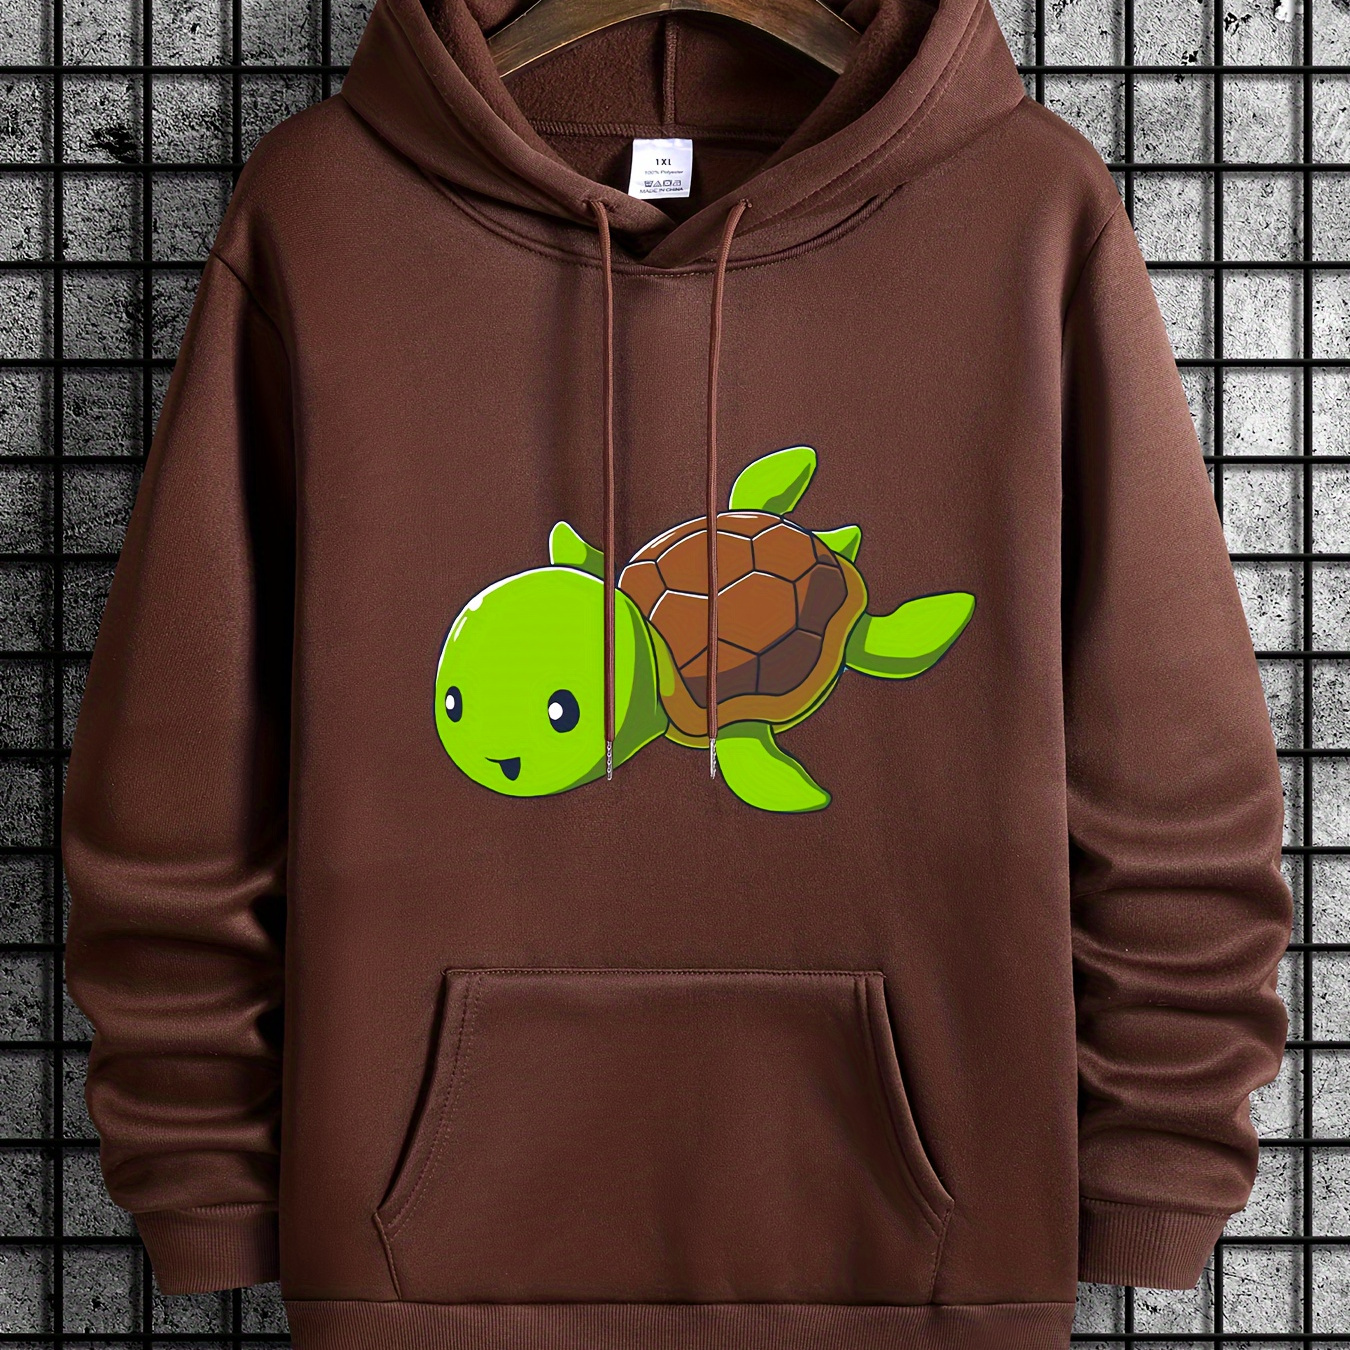 

Plus Size Men's Anime Tortoise Print Hooded Sweatshirt For Spring Fall Winter, Men's Clothing